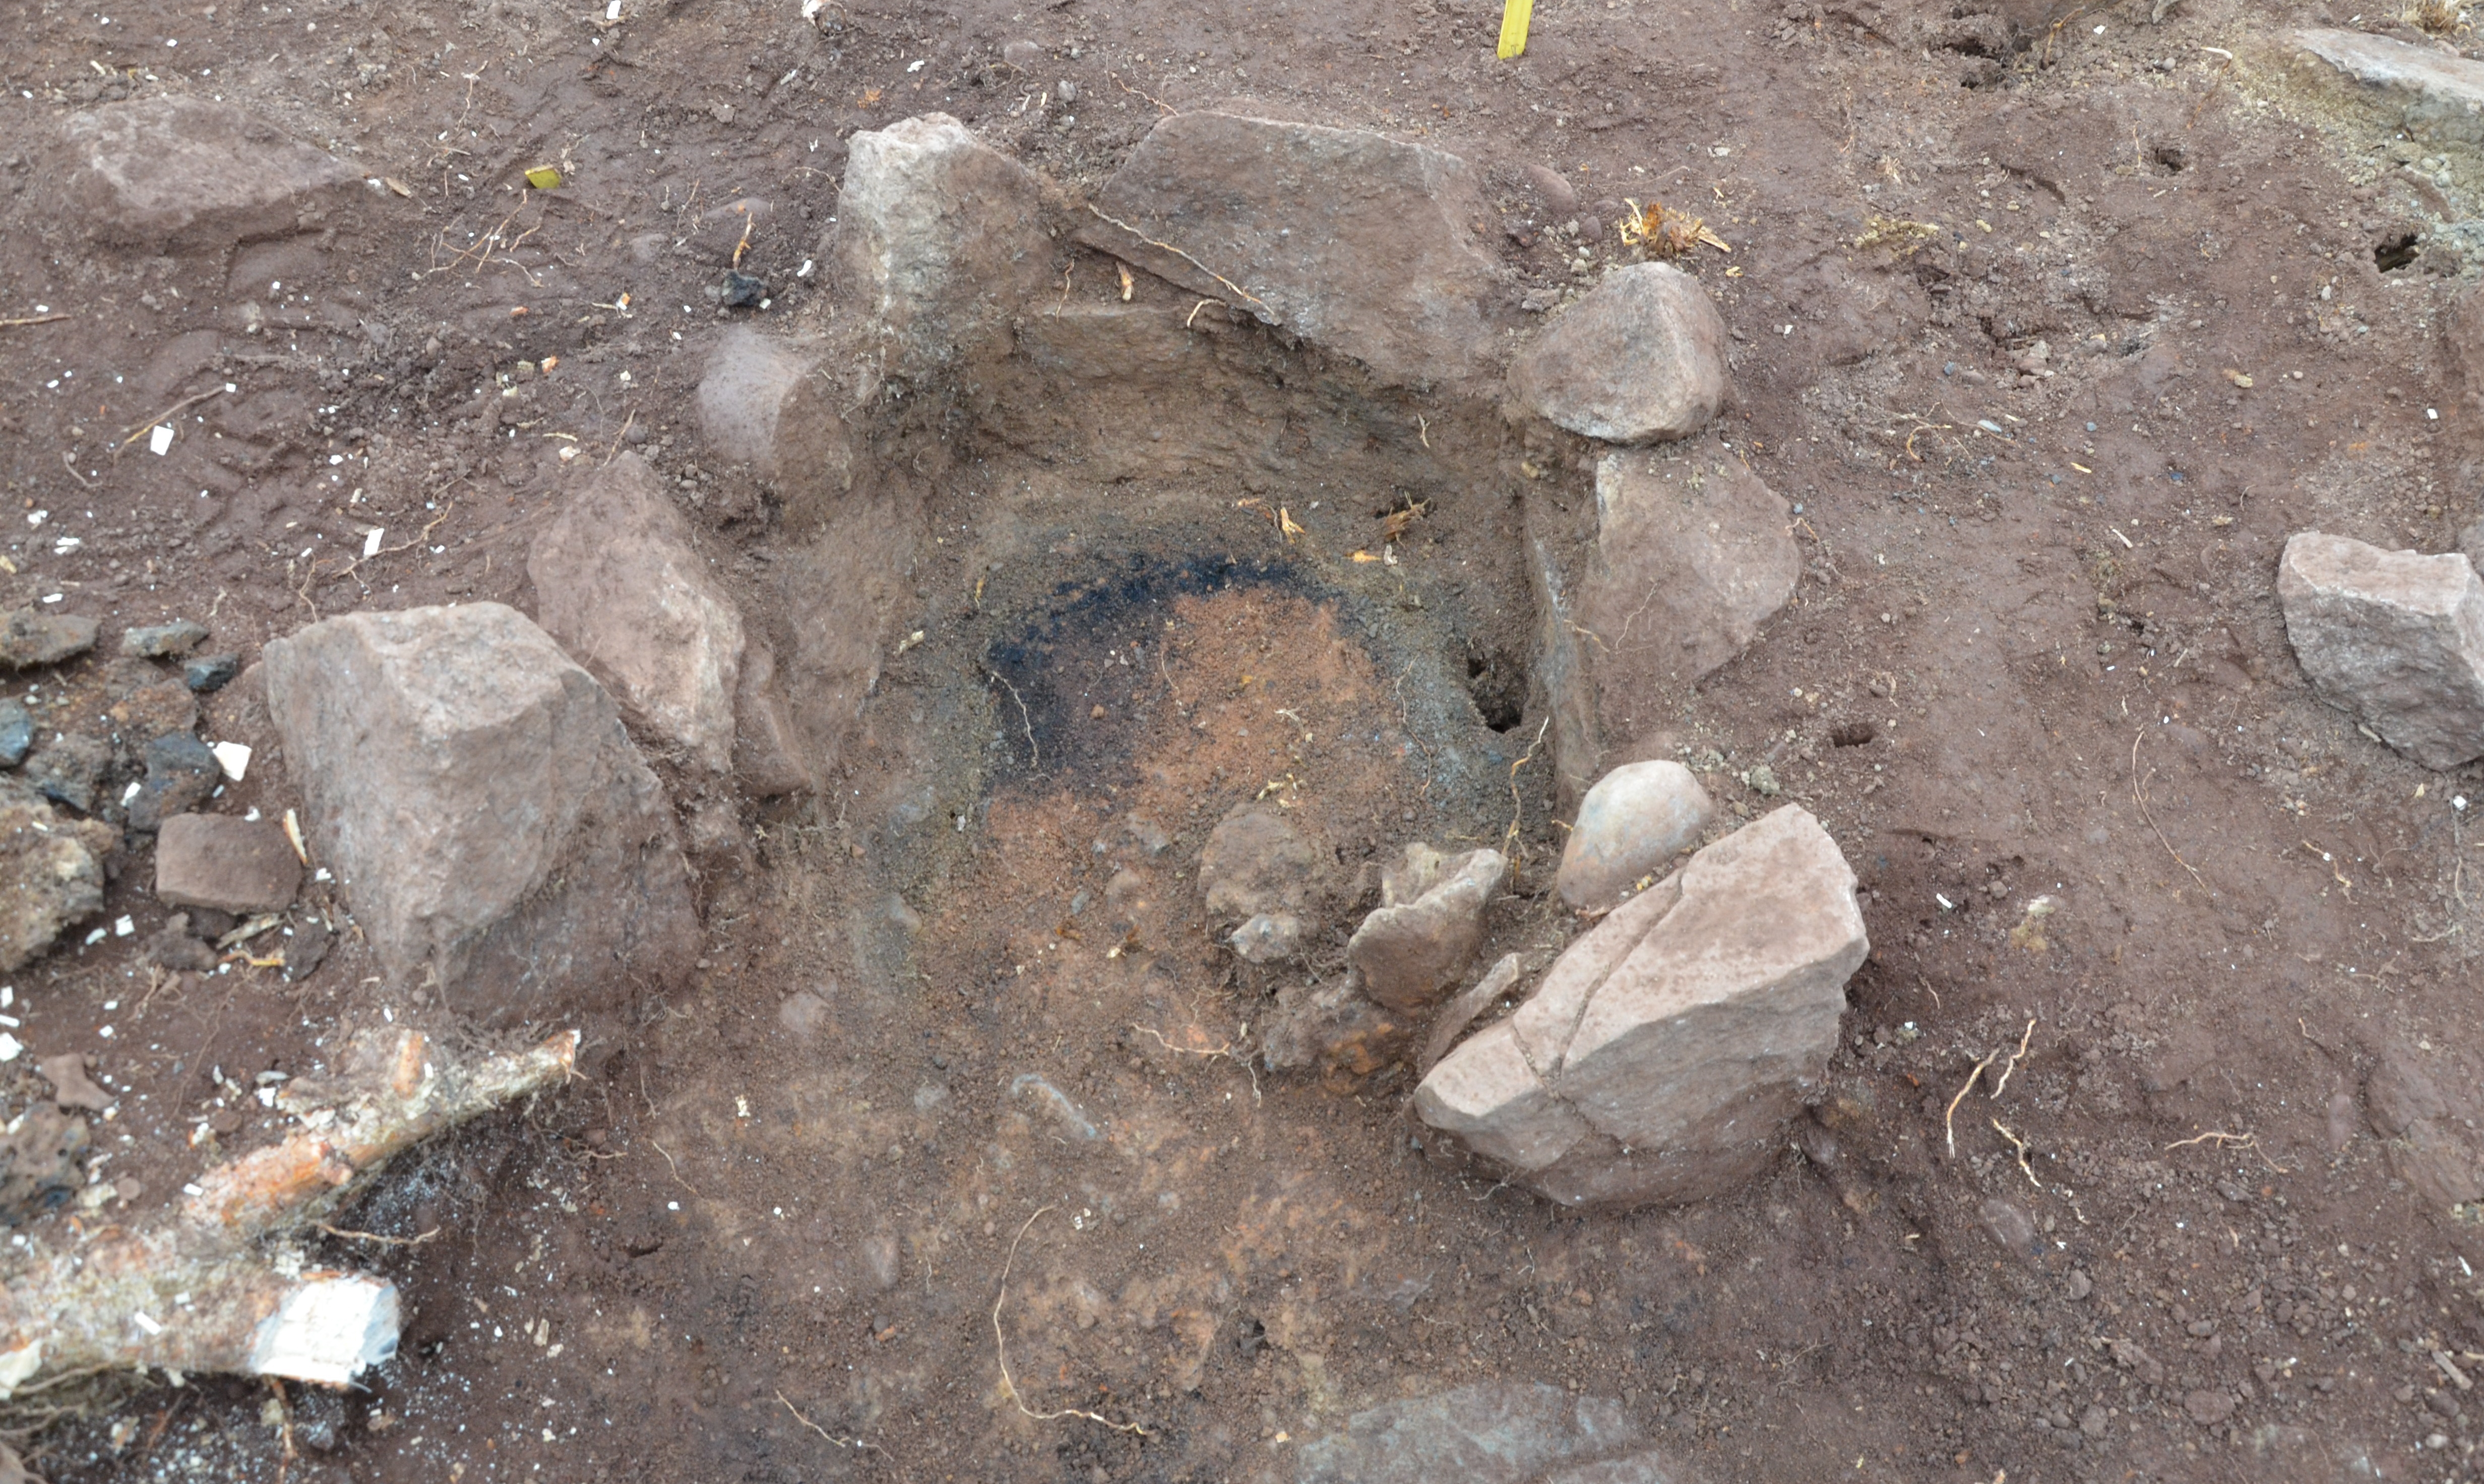 Utgrävning av en ugn med stenar omkring. Svart aska syns i mitten.